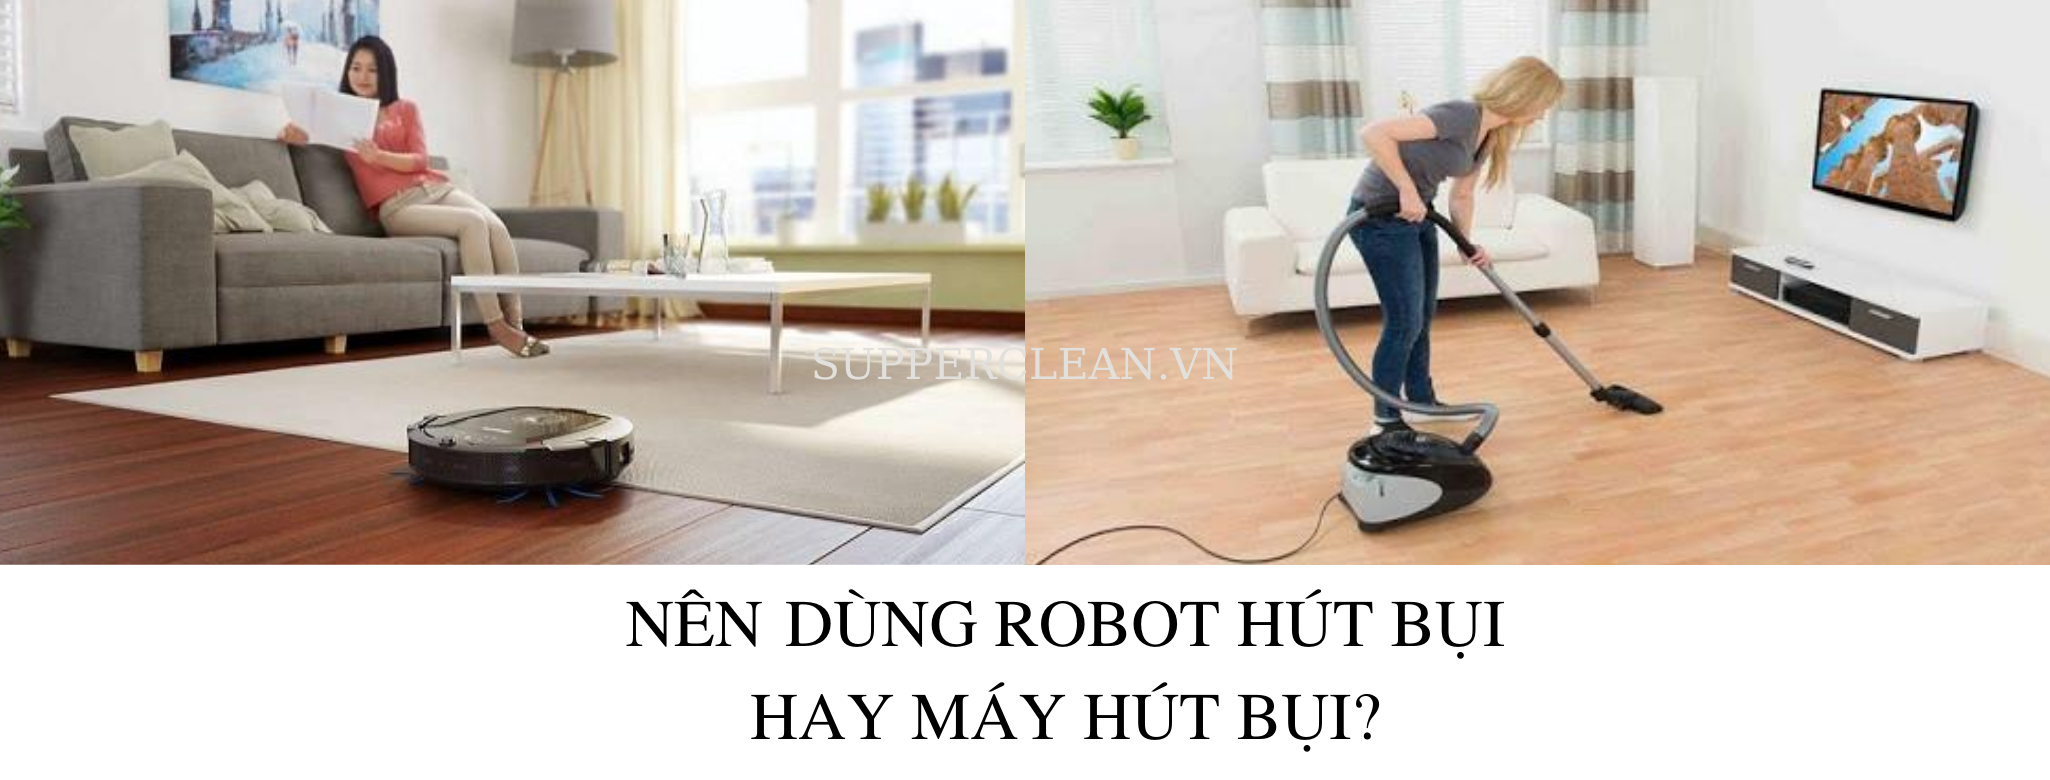 co-nen-mua-robot-hut-bui